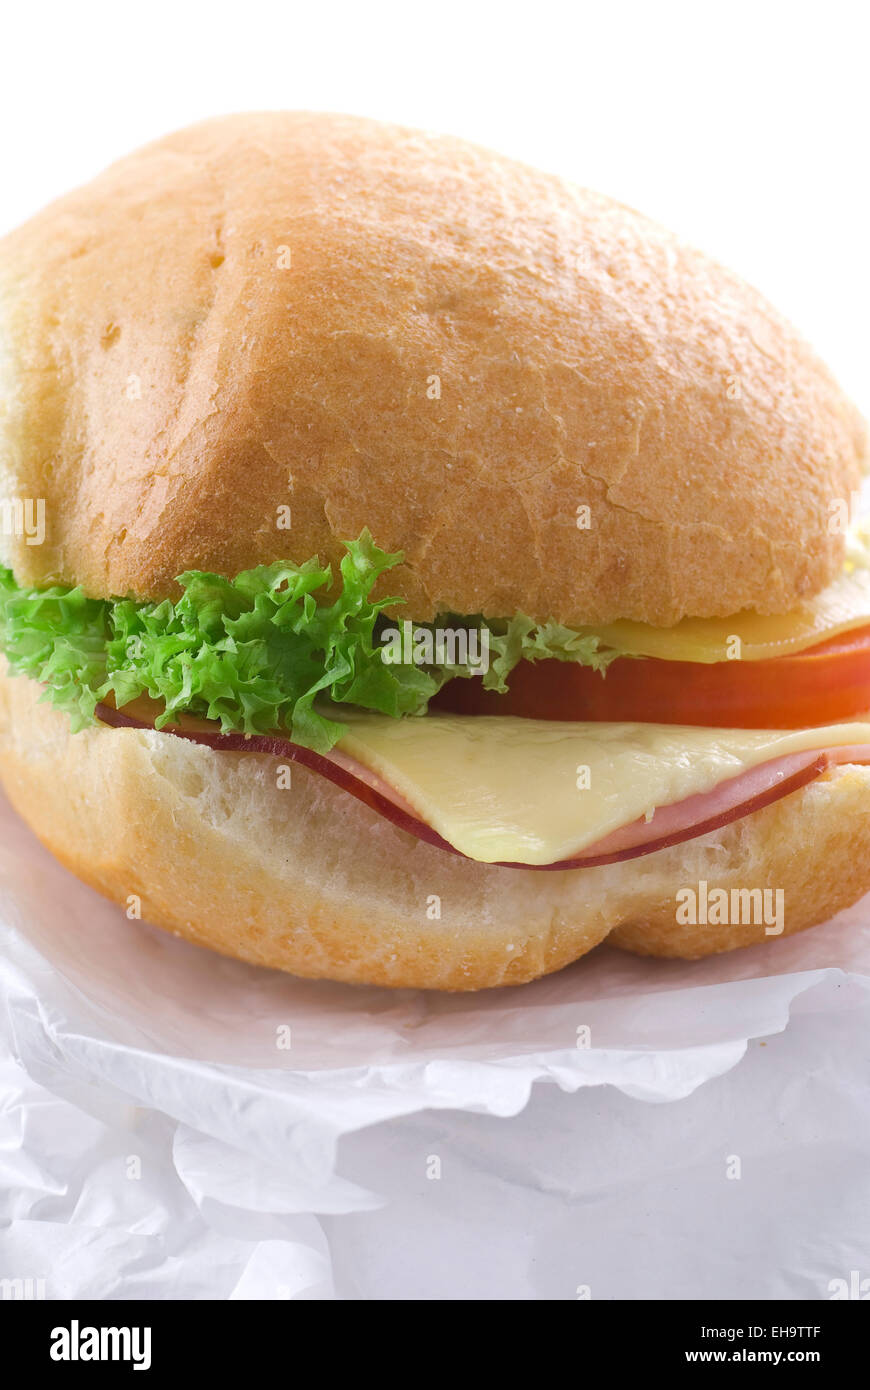 Sándwich de jamón y queso sobre papel absorbente. Foto de stock